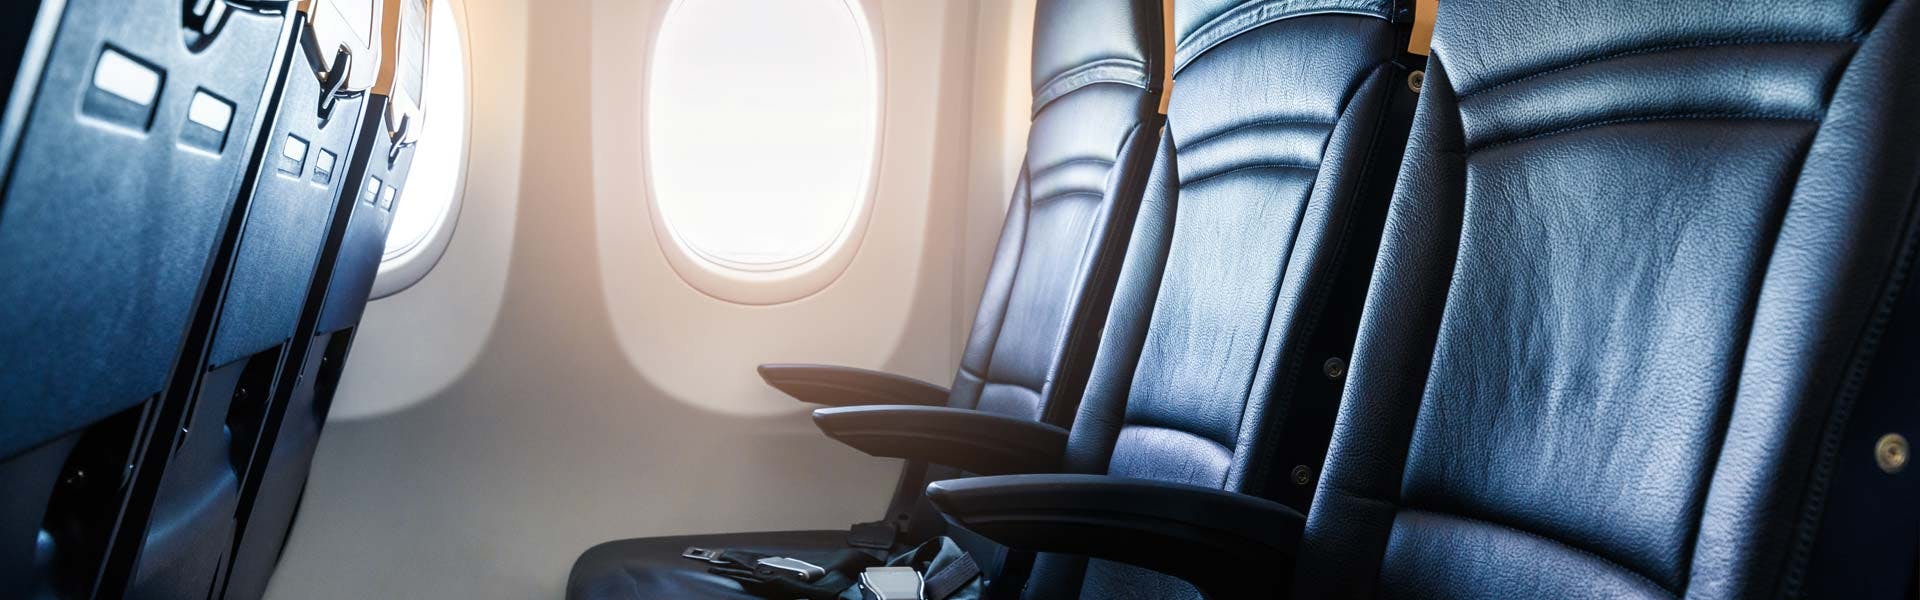 Trouvez le vrai confort sur un vol charter.